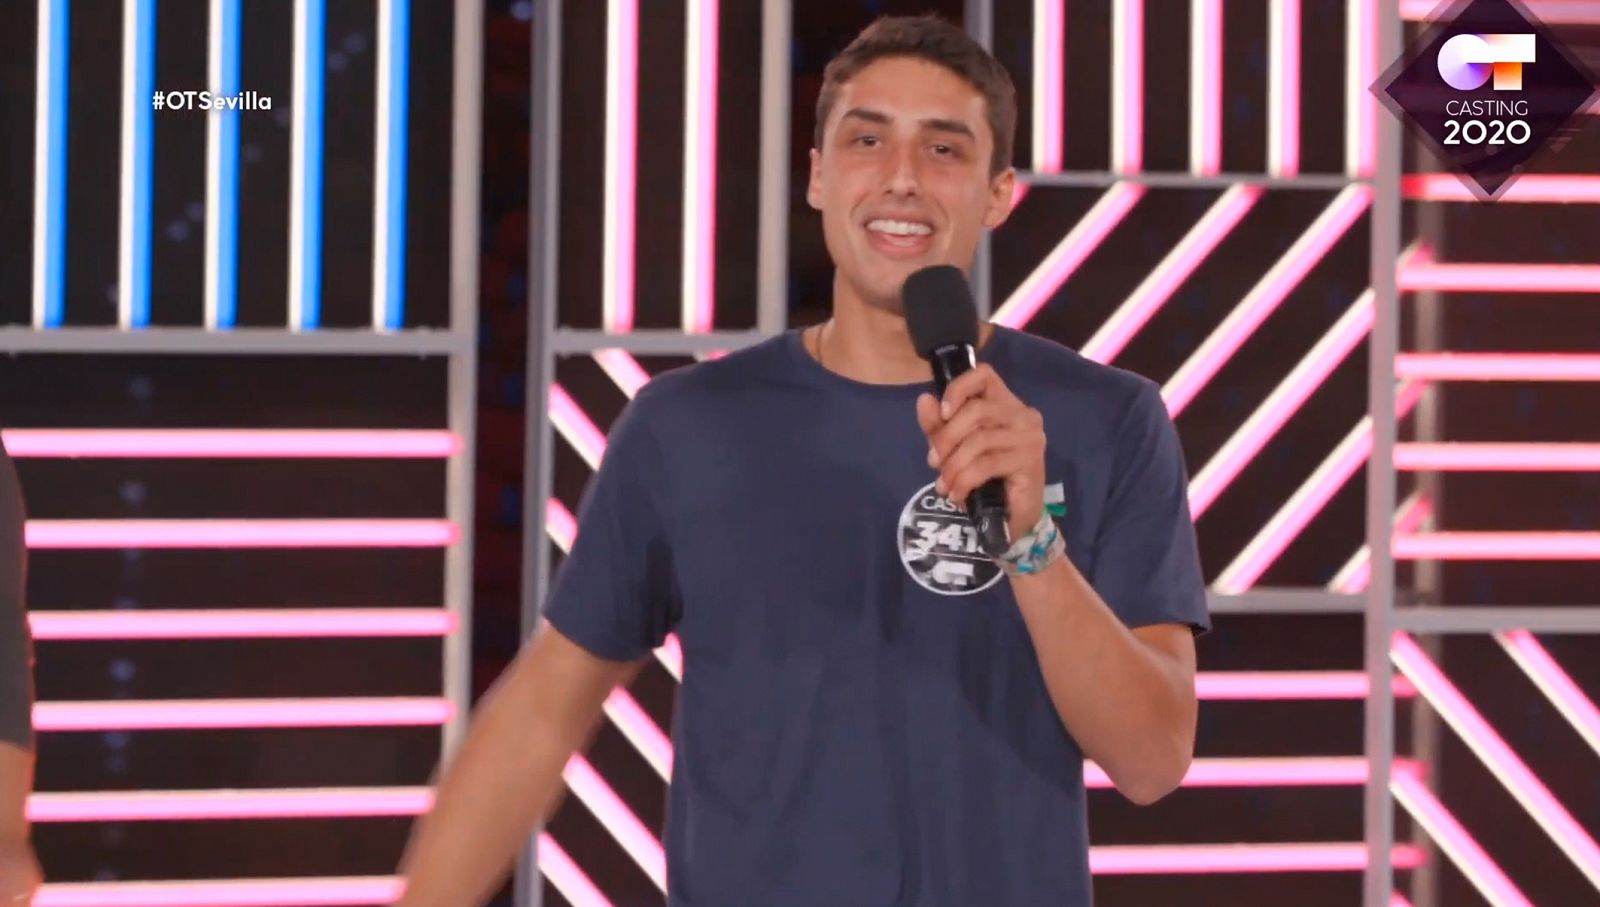 Mike ha hecho reír mucho al jurado en la Fase 2 del casting de OT 2020 en Sevilla